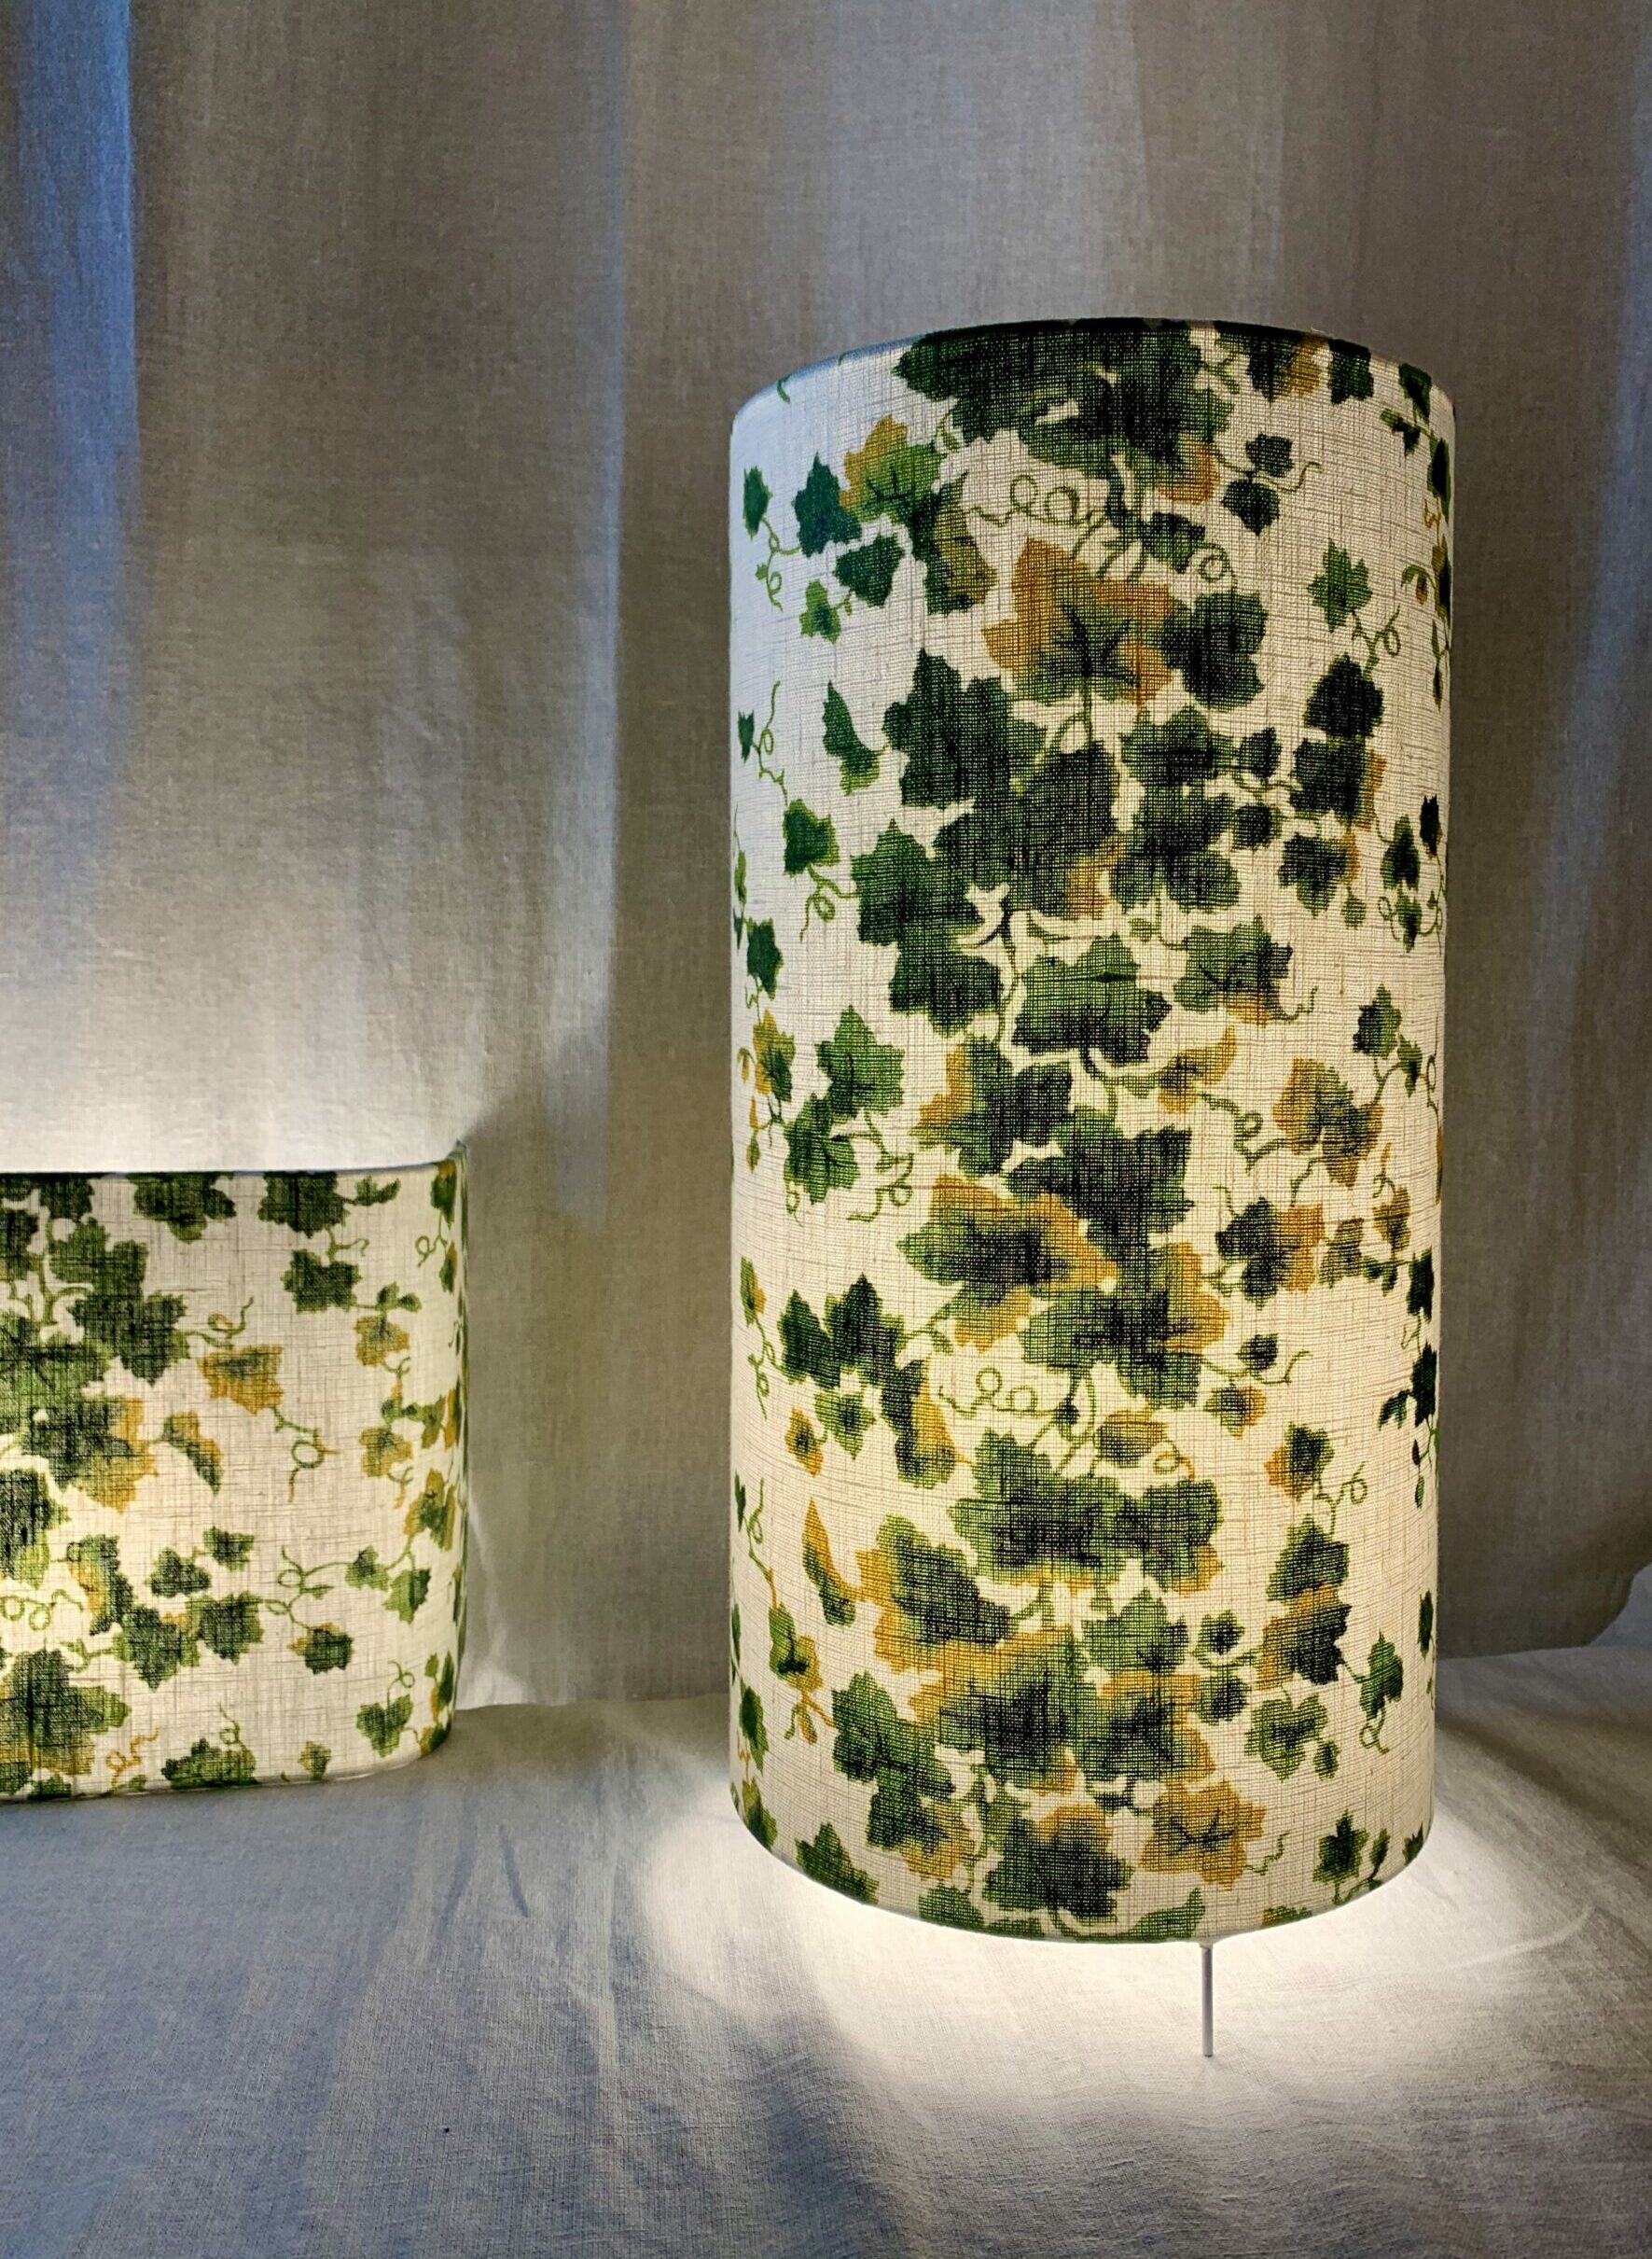 Lampe à poser de forme haute et cylindrique réalisée par Sara Marquet, habillée d'un tissu représentant un lierre grimpant, image joyeuse faisant entrer le végétal dans la maison.